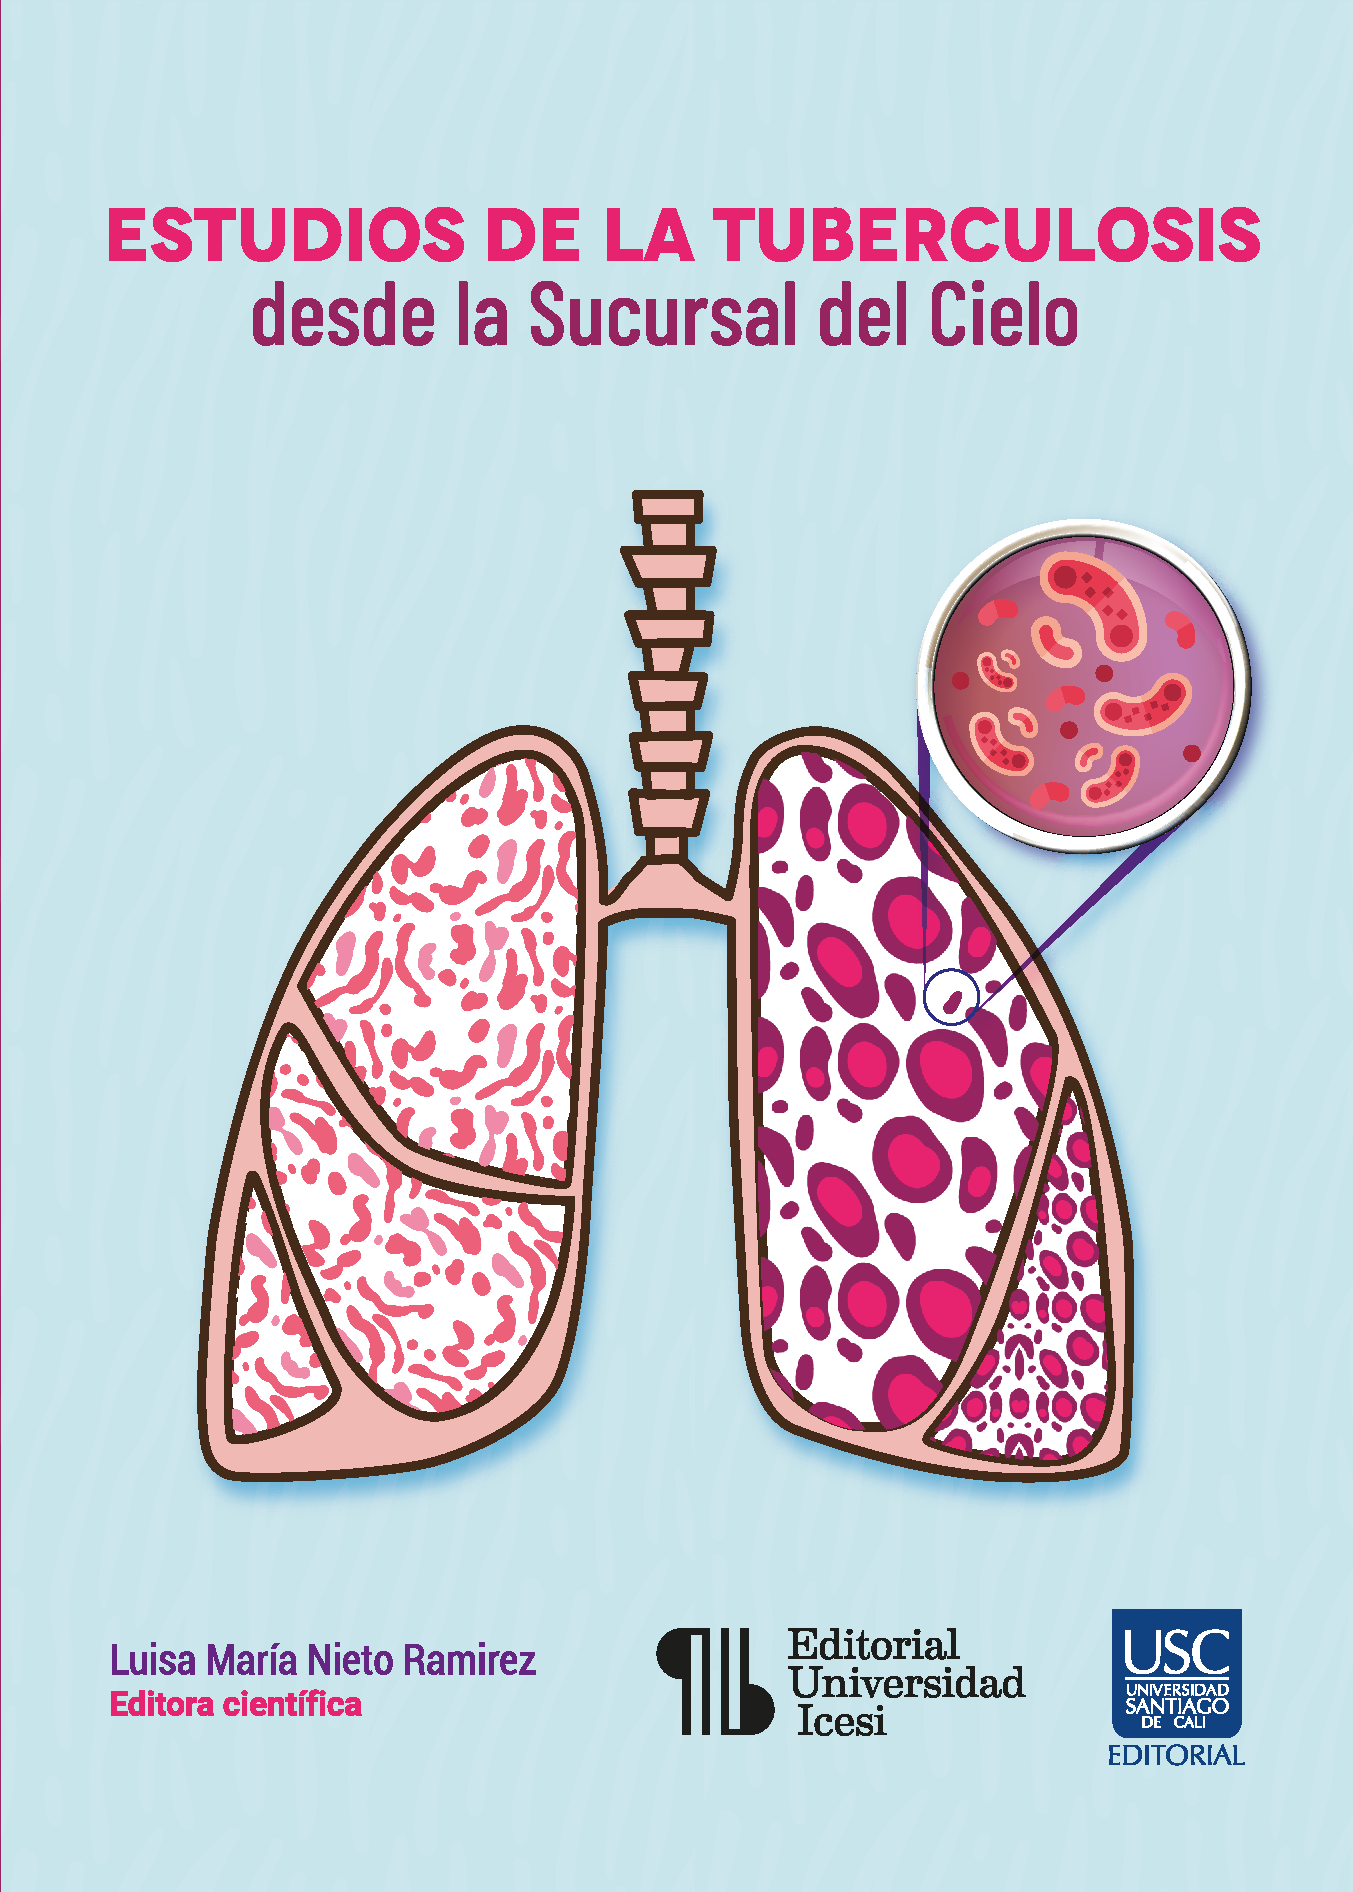 Imagen de portada del libro Estudios de la tuberculosis desde la Sucursal del Cielo